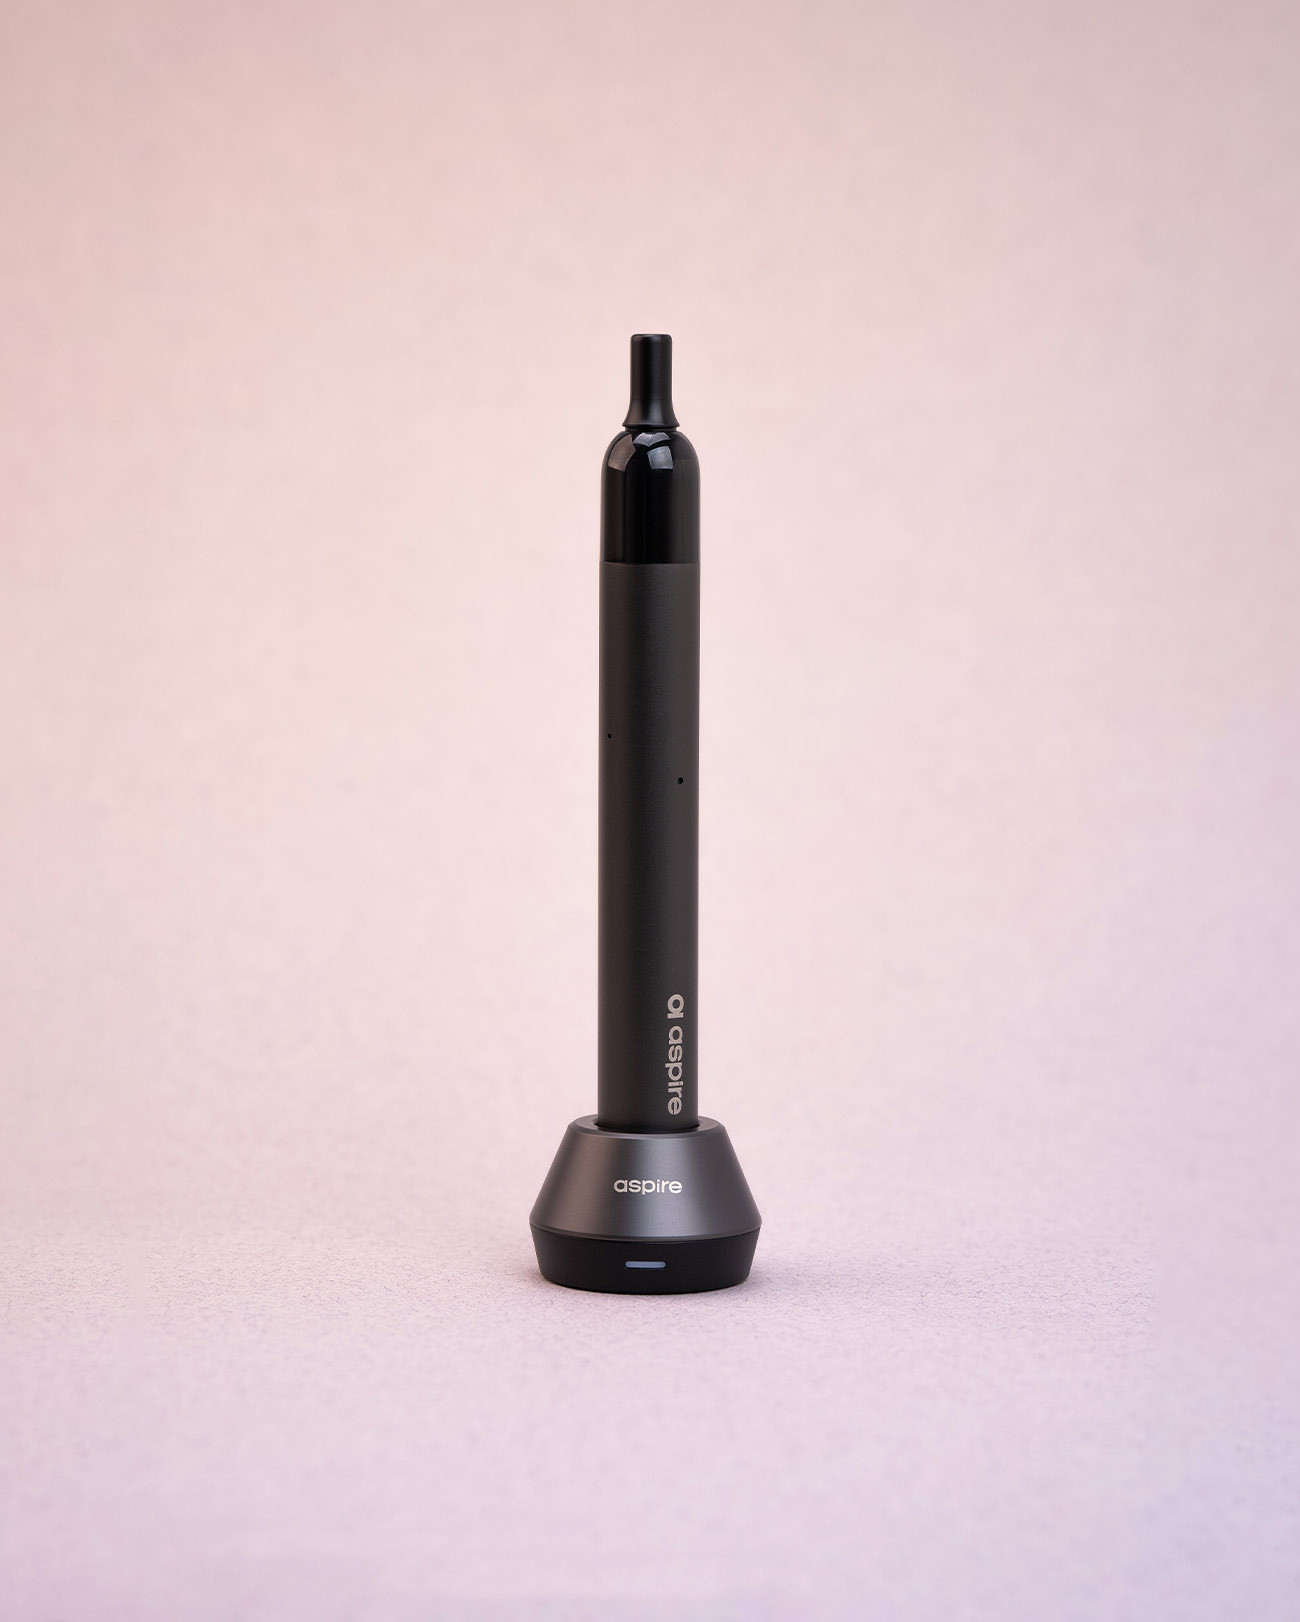 Socle de charge magnétique pour pod Aspire Vilter Pro Pen